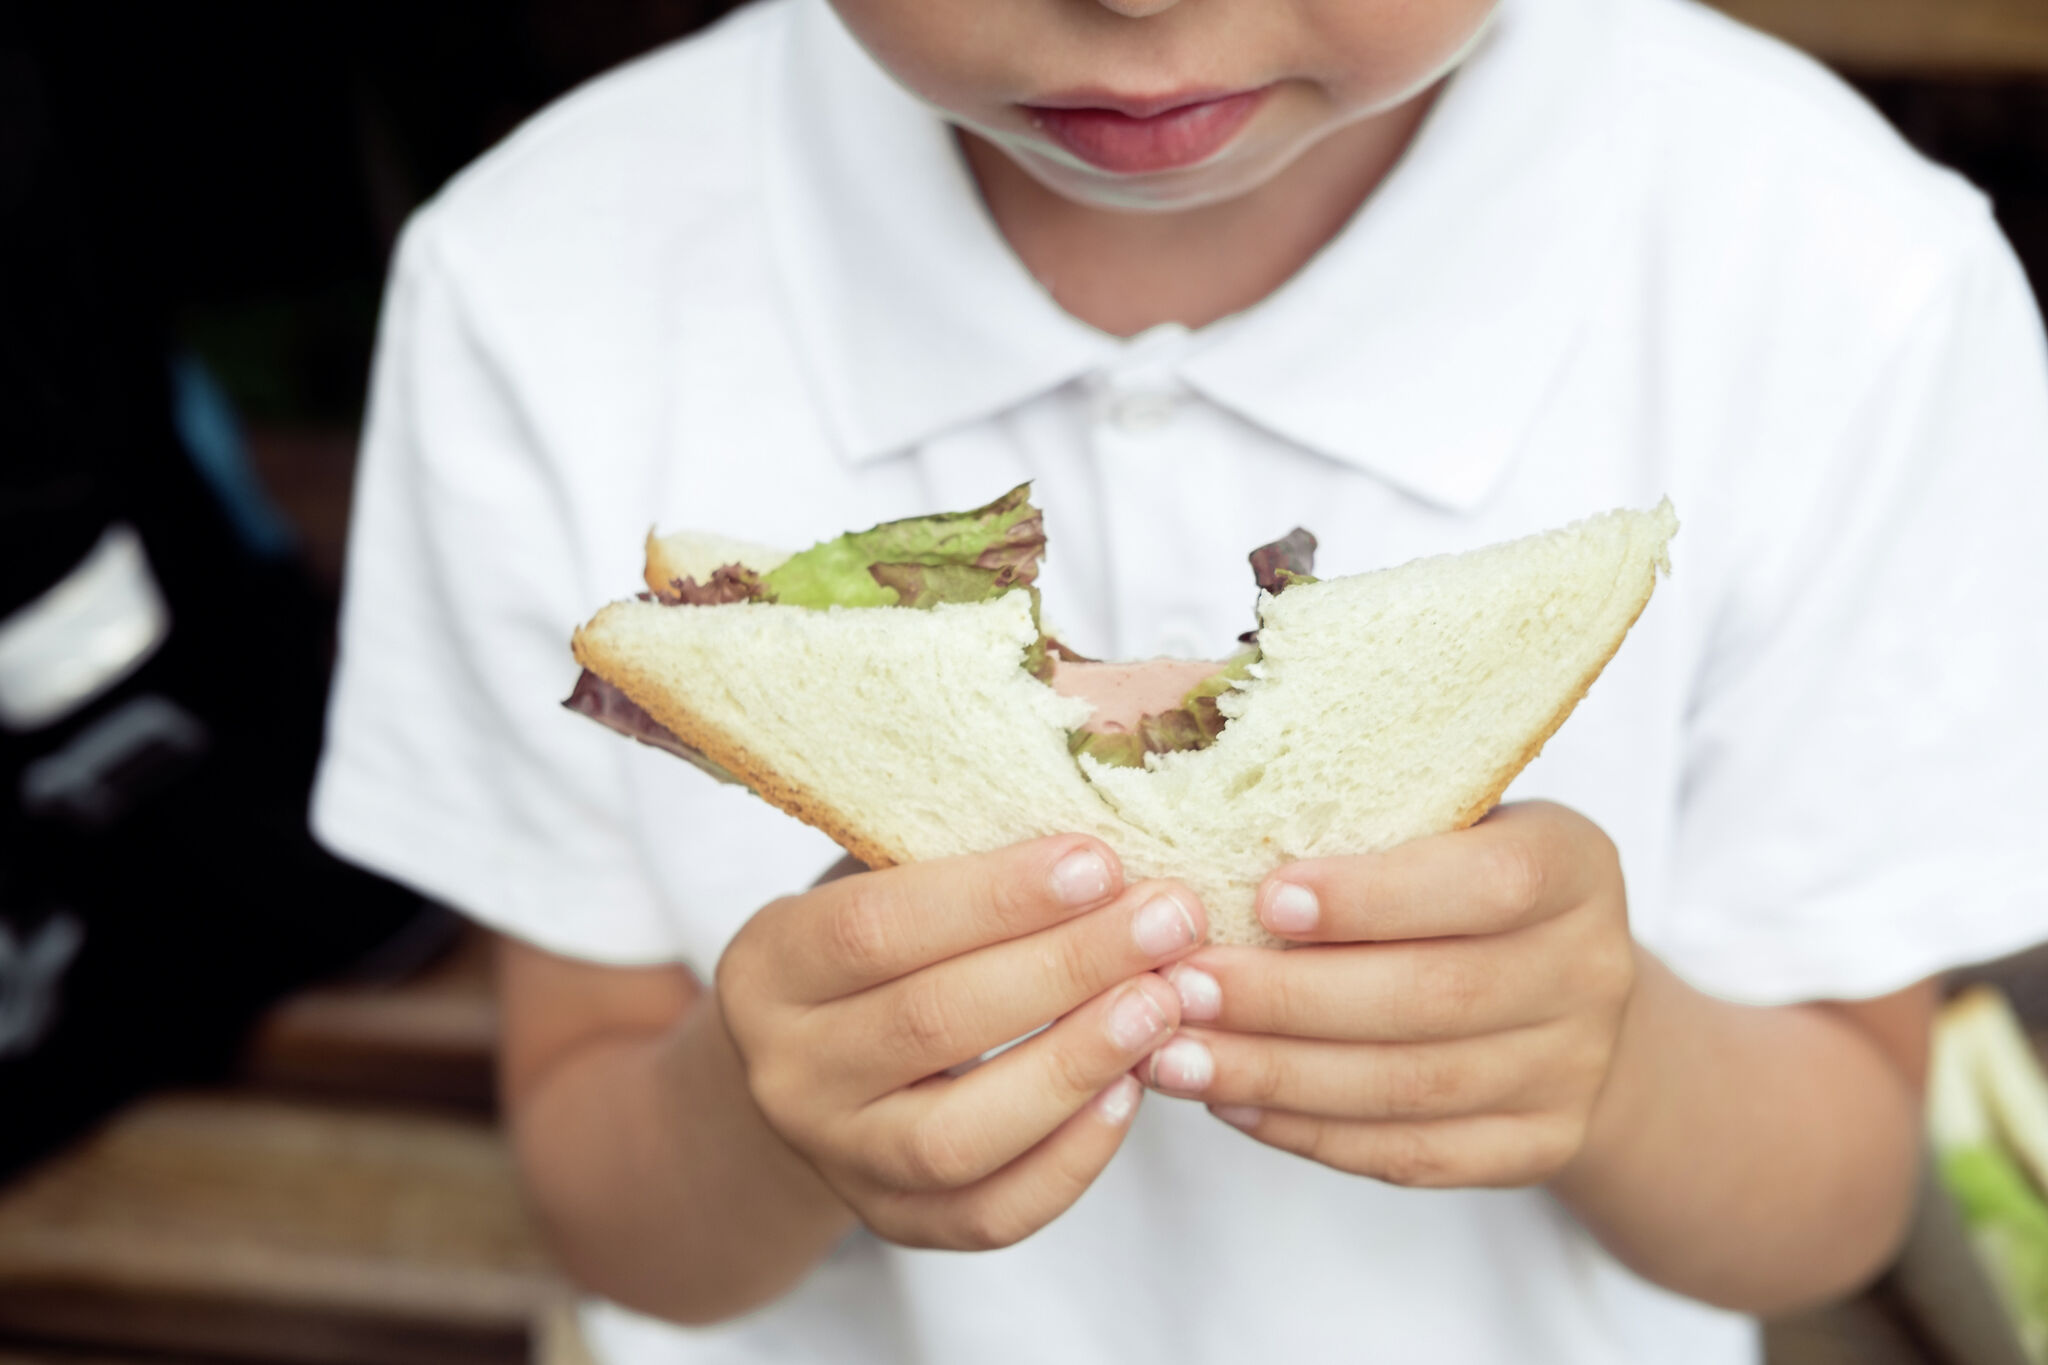 夏季电子食品券计划将帮助孩子们保持饱食——但前提是纽约州选择参与